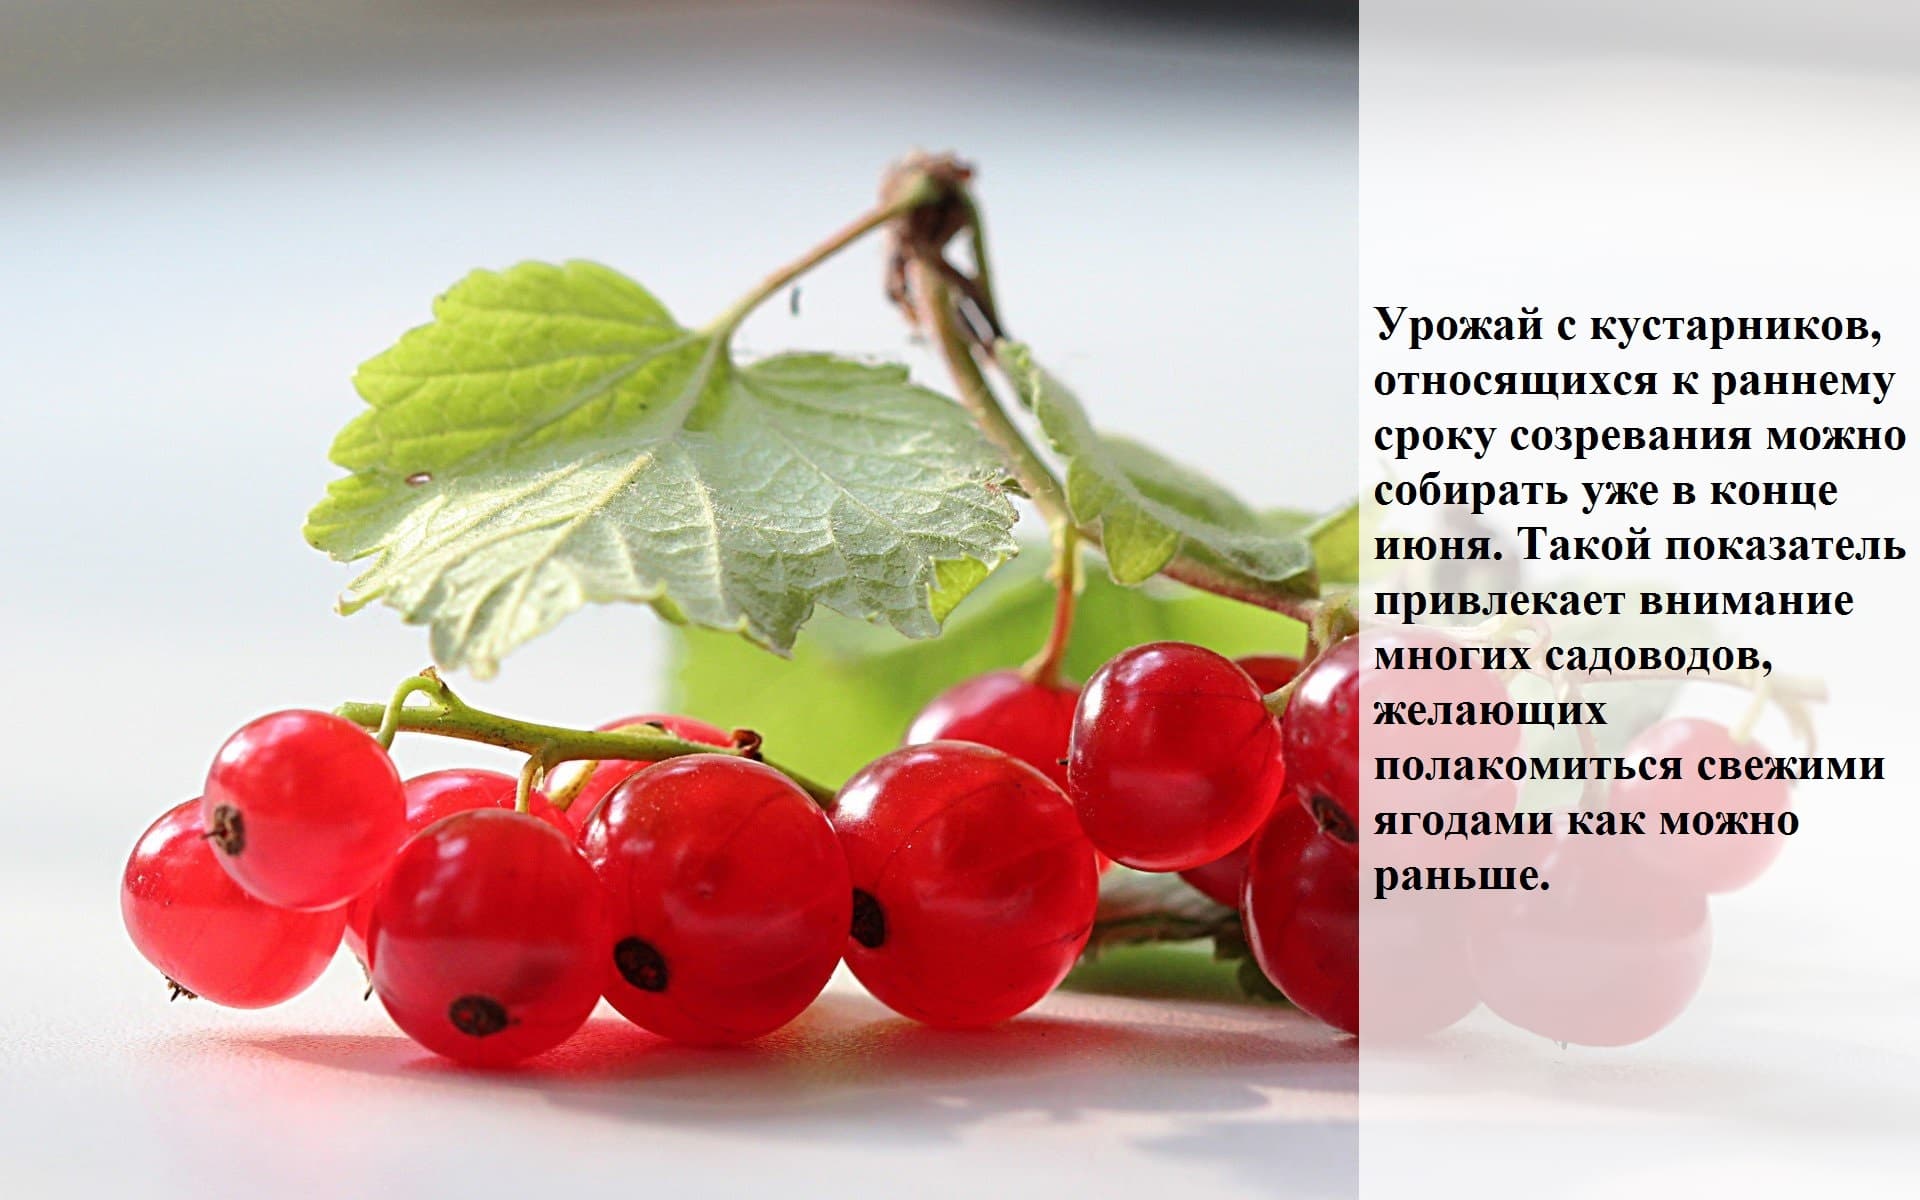 Смородина красная - описание, состав, калорийность и пищевая ценность - patee. рецепты